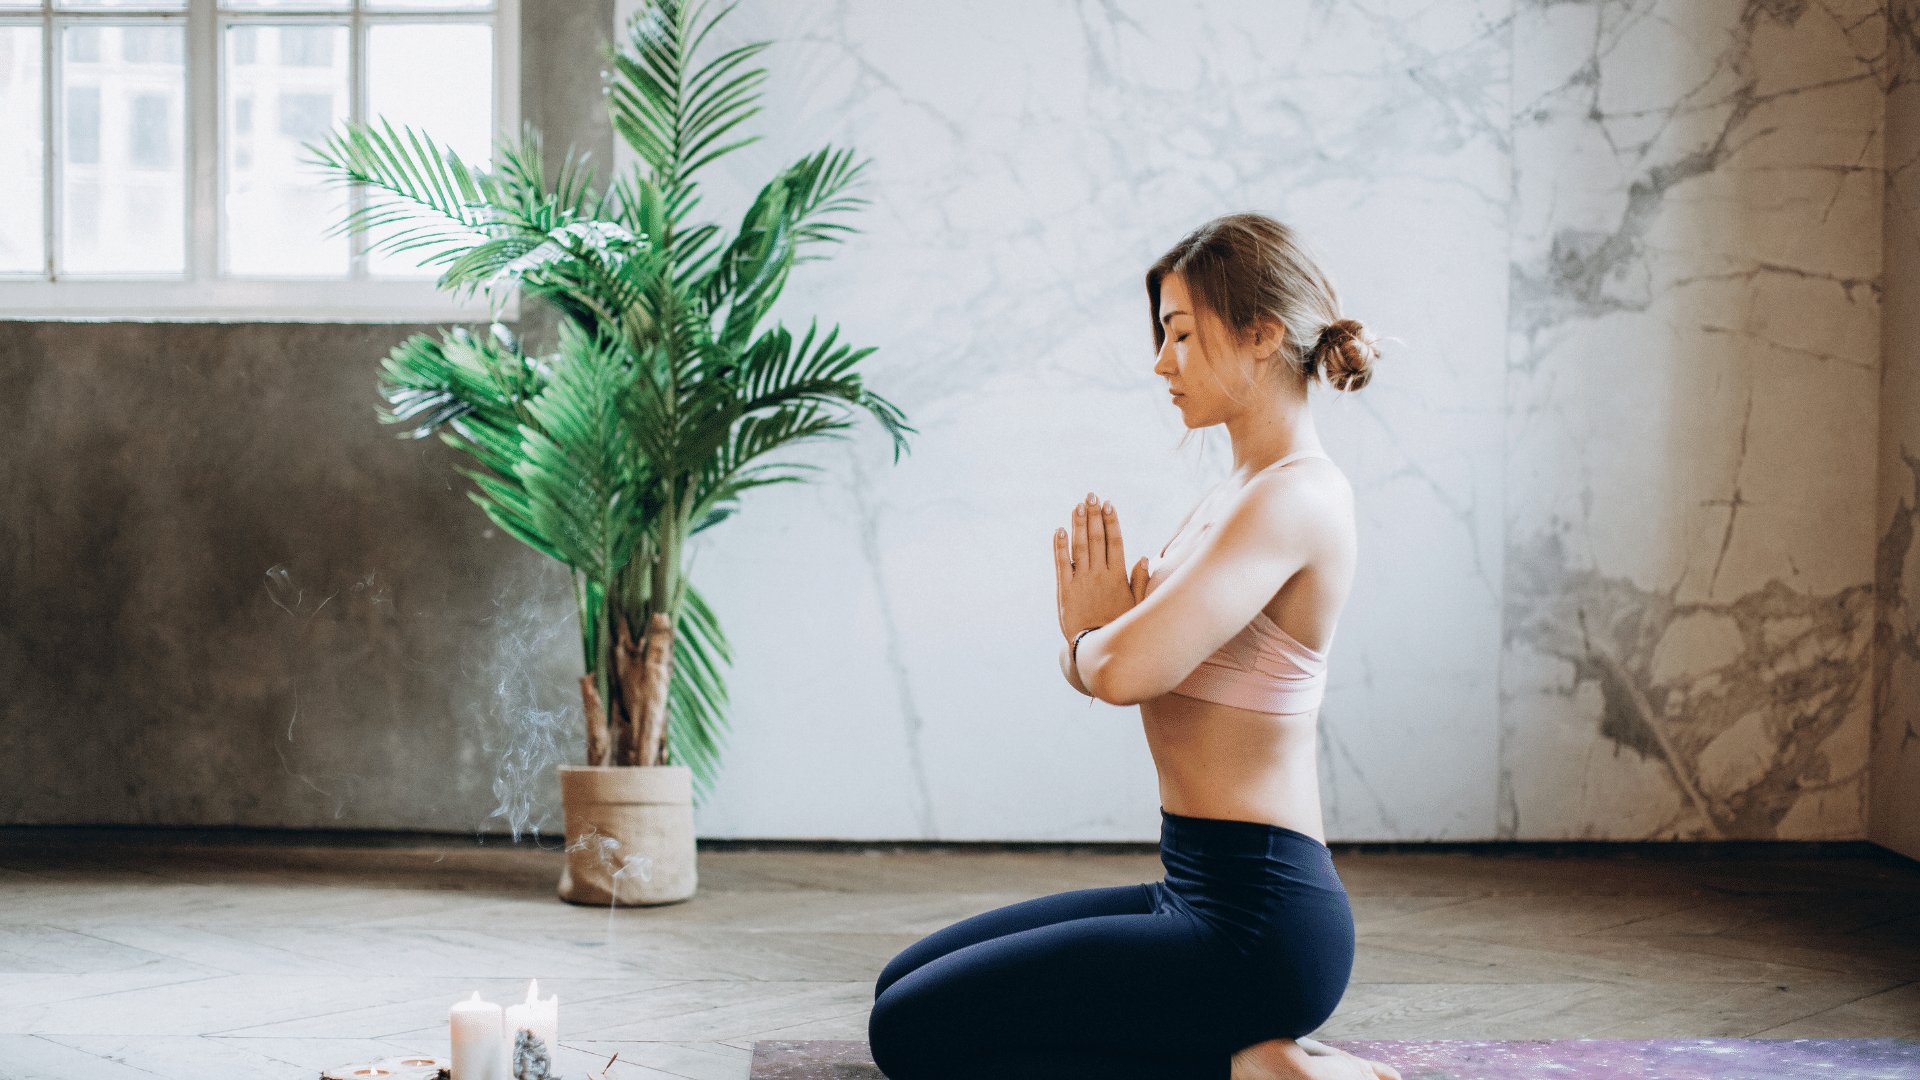 Mulher sentada em seu tapete em uma pose de yoga com as mãos unidas